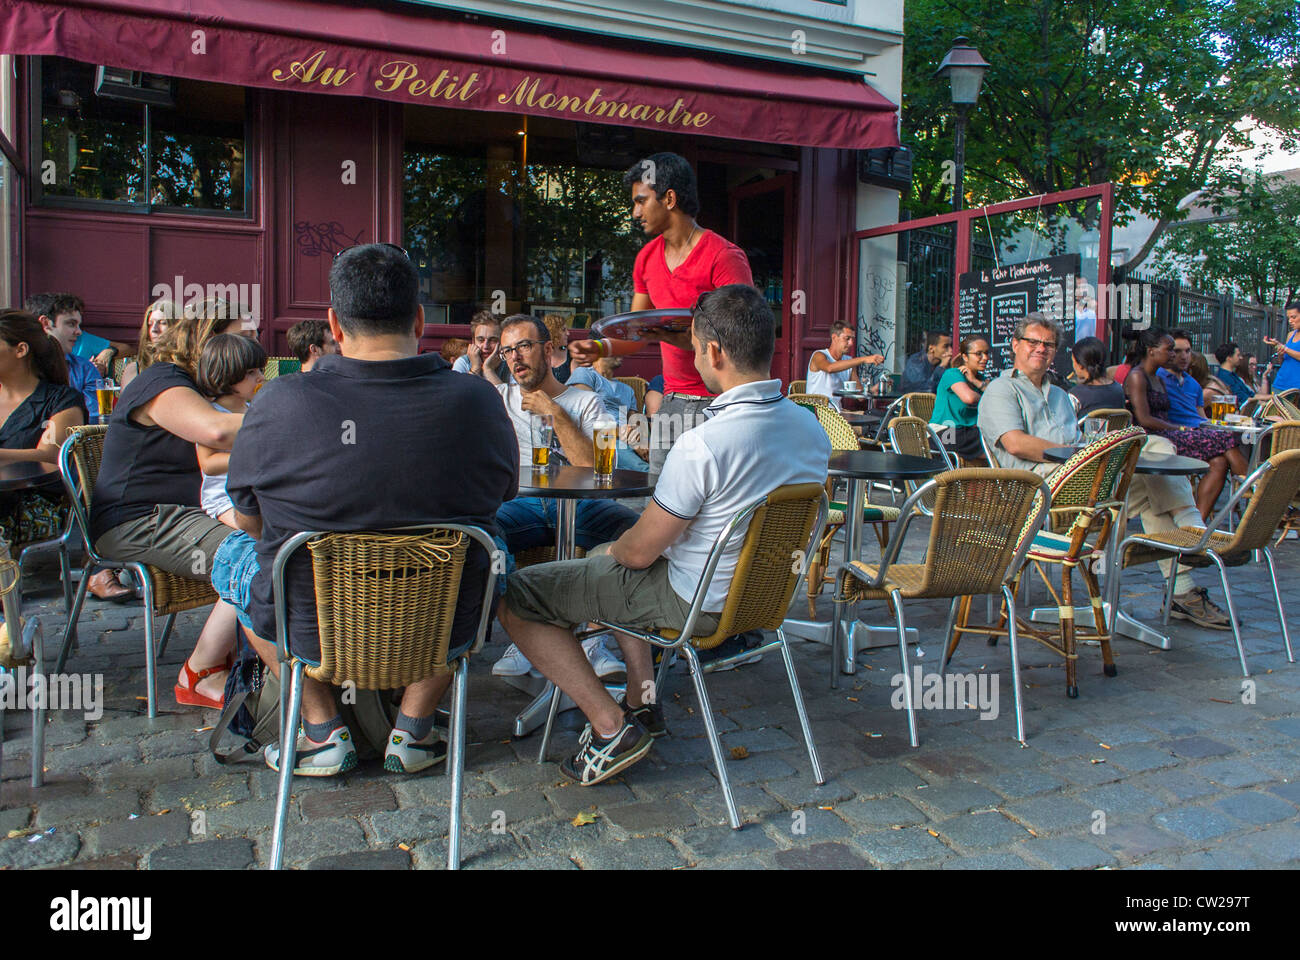 Paris, café France, grande foule de personnes partageant des boissons dans Abesses, quartier de Montmartre, terrasse de rue, Bistro français Restaurant 'au petit Montmartre' scène de café français parisien, trottoir, extérieur, terrasse de restaurant bondé Banque D'Images